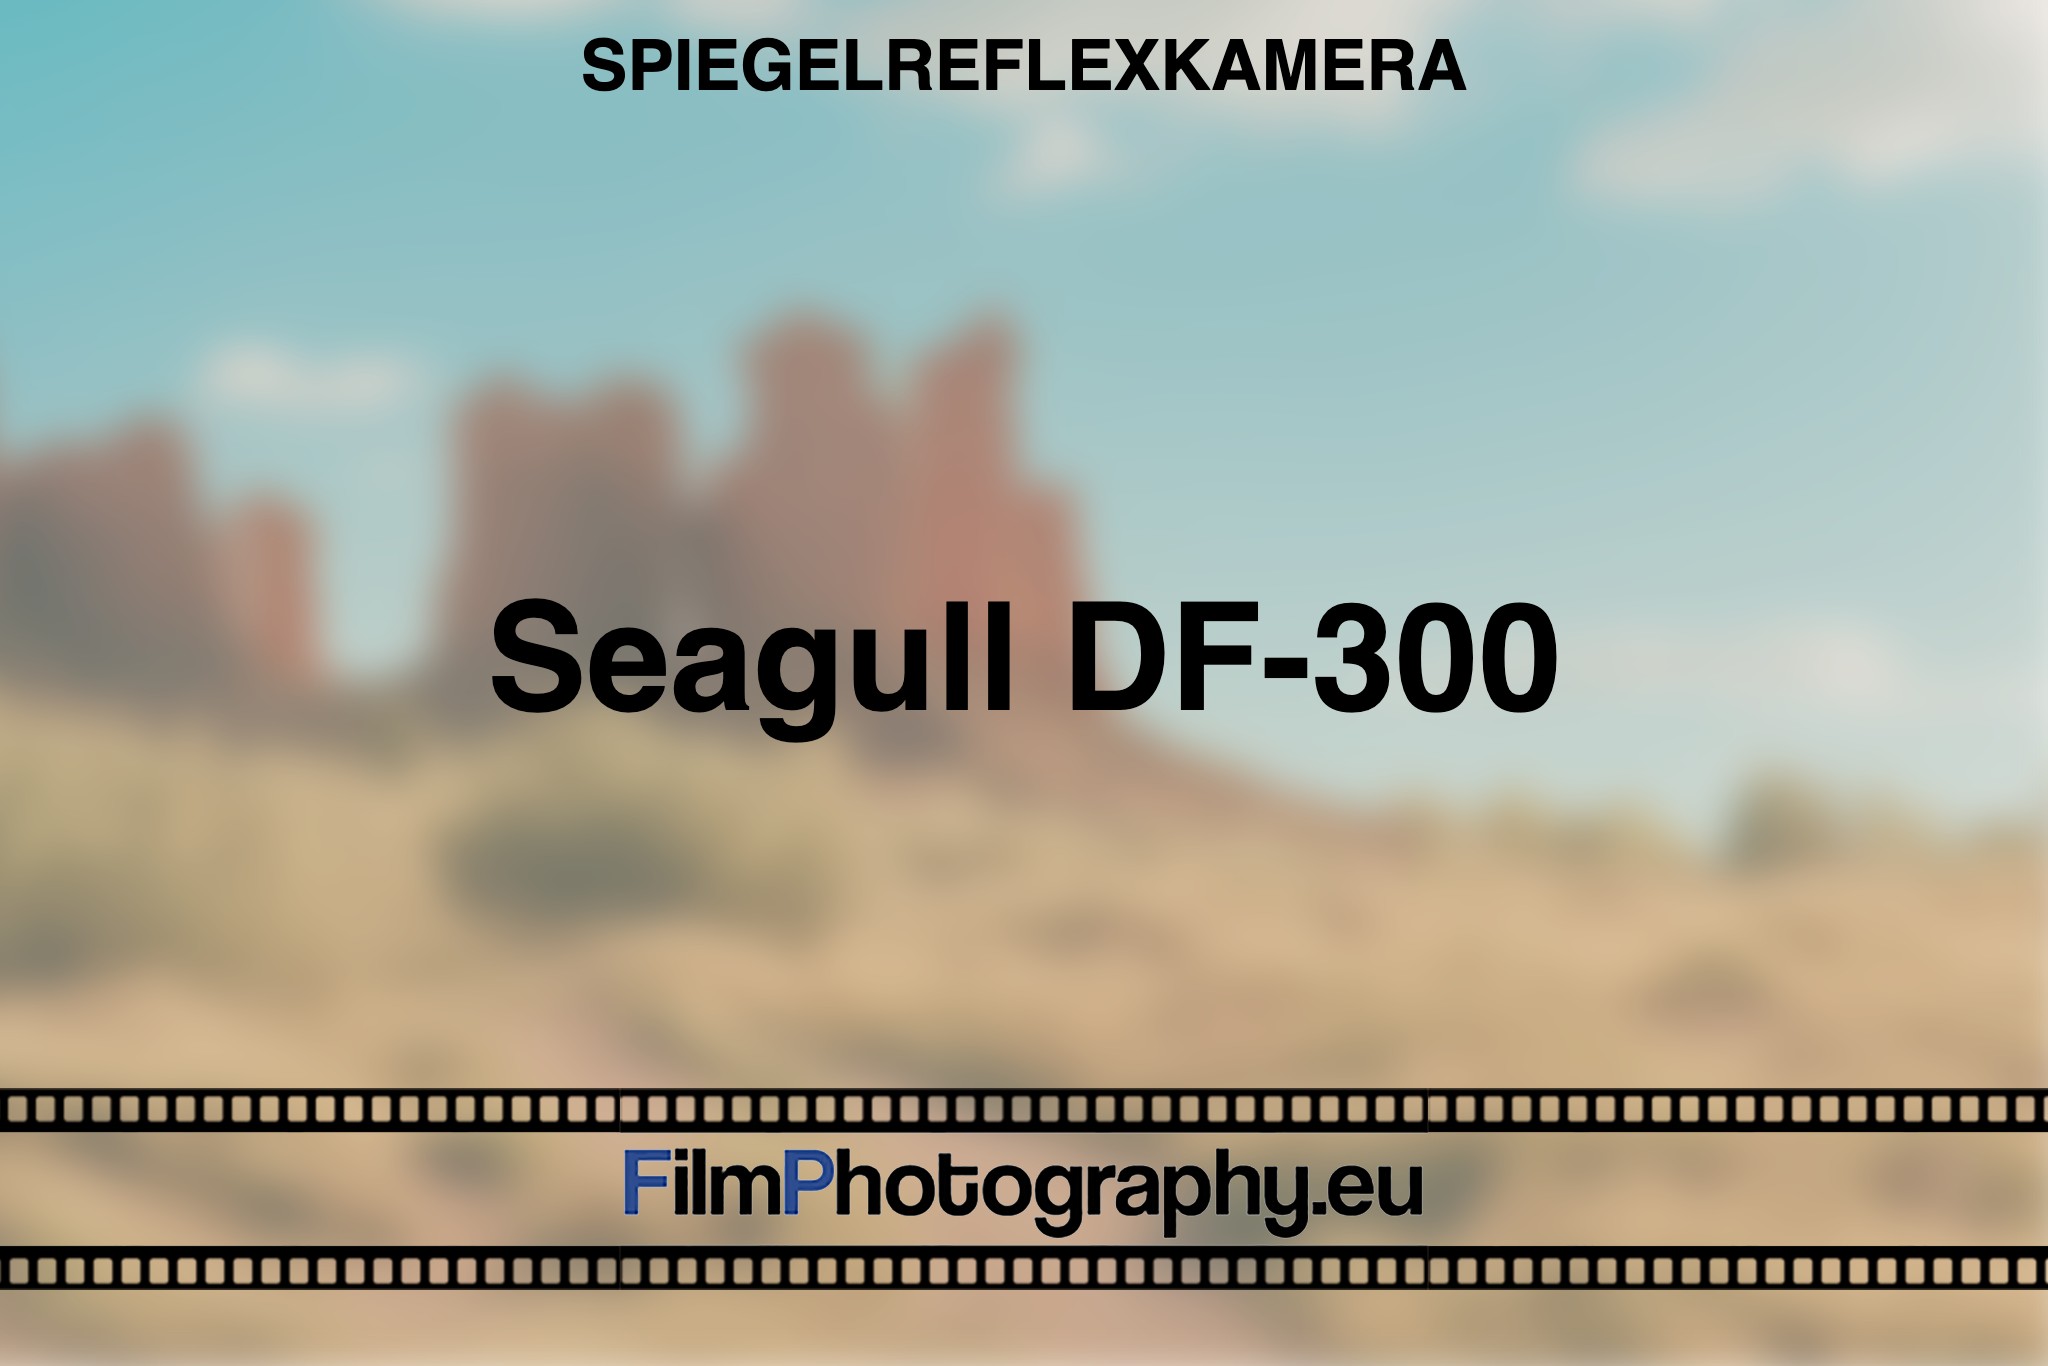 seagull-df-300-spiegelreflexkamera-bnv